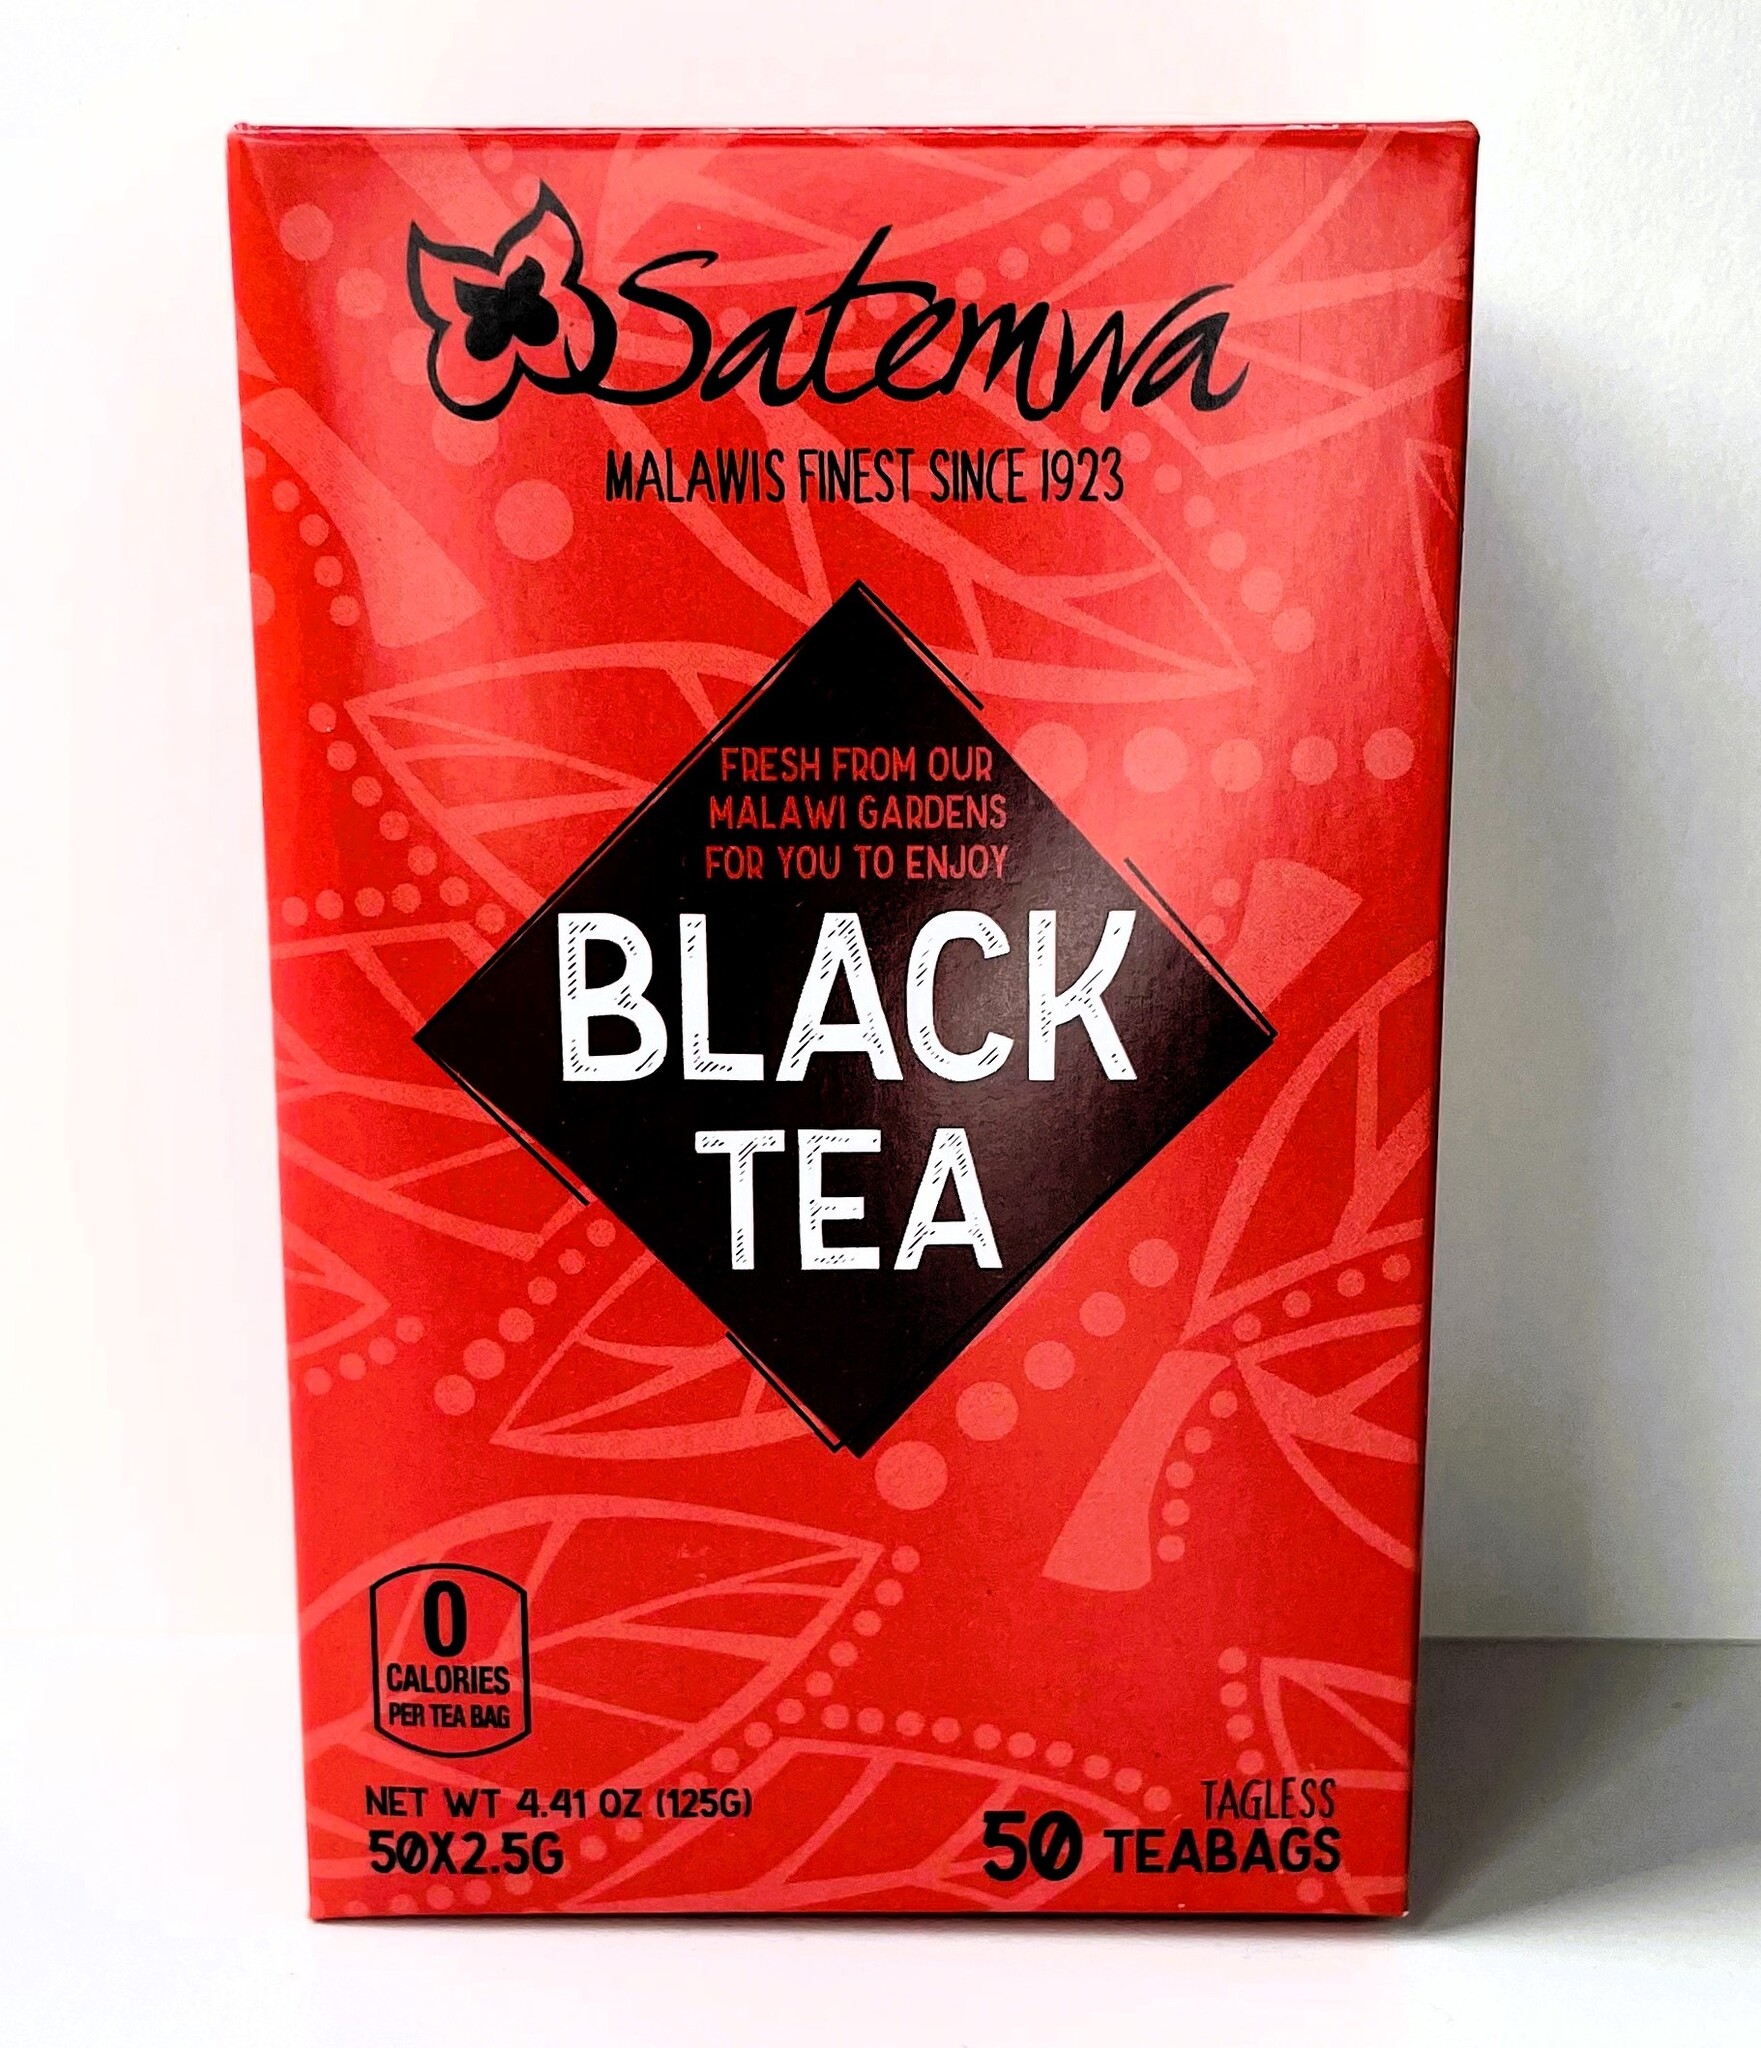 Satemwa Satemwa Export Quality - 50 Tea Bags - Black Tea - Tea Bags